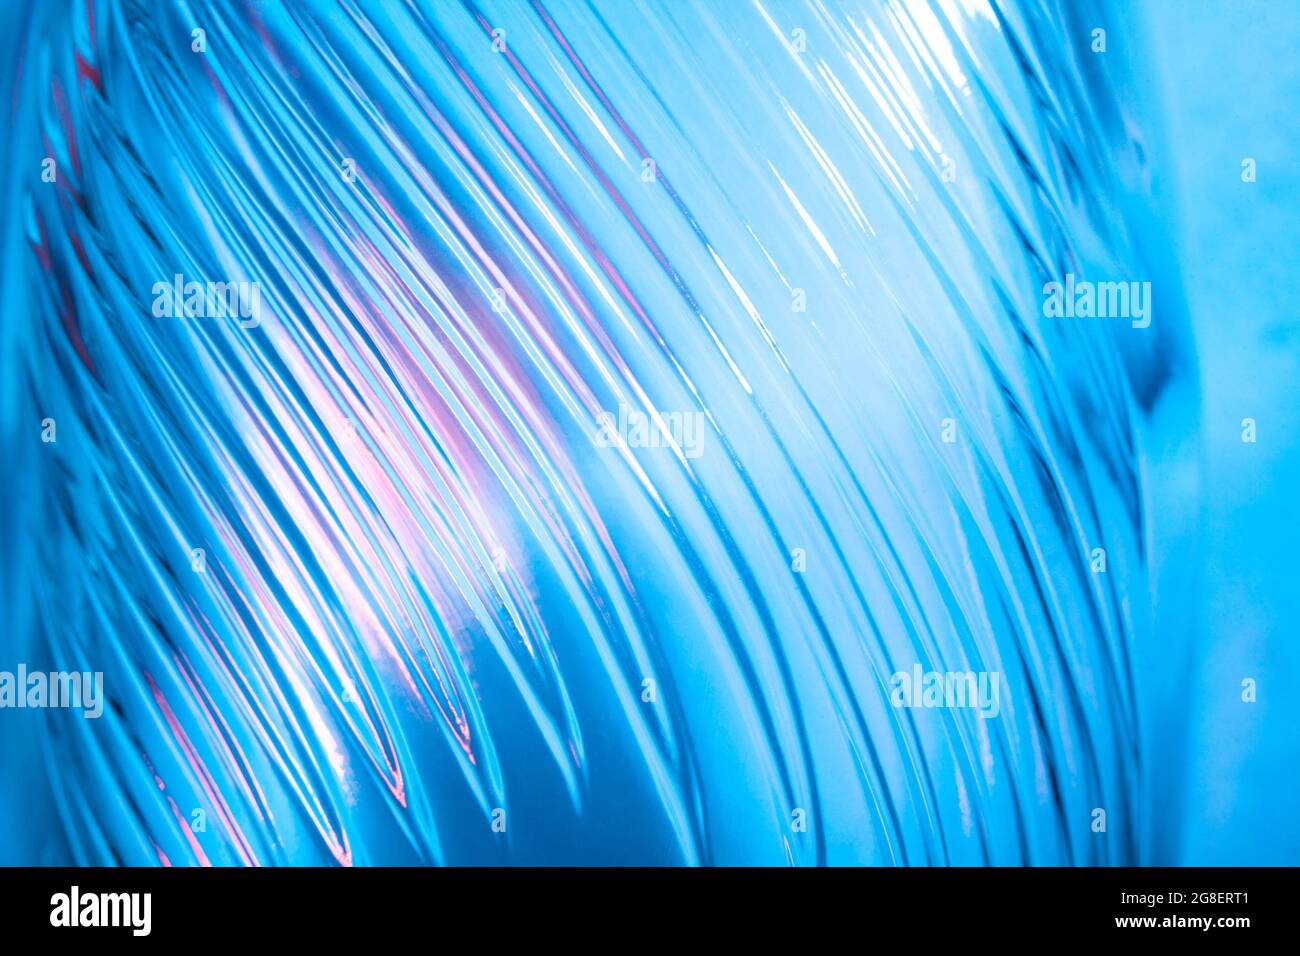 Arrière-plan en verre abstrait. Texture de verre ondulé illuminé par une lumière multicolore. Taches roses et bleues. Gros plan. Évasements sur glace Banque D'Images